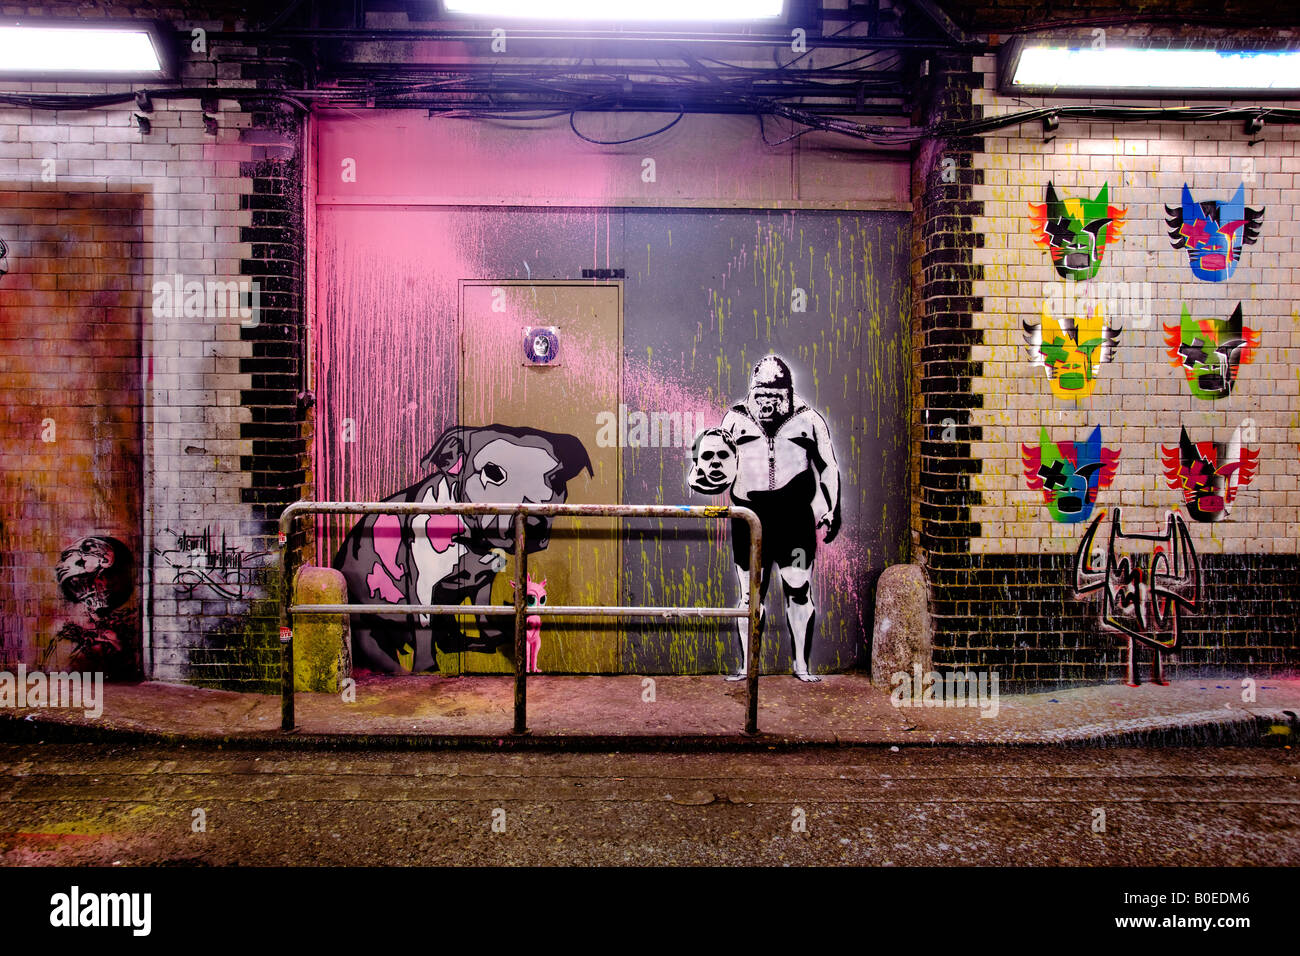 Le lattine Festival - stencil art in una strada in disuso in tunnel di Waterloo, Londra del sud Foto Stock